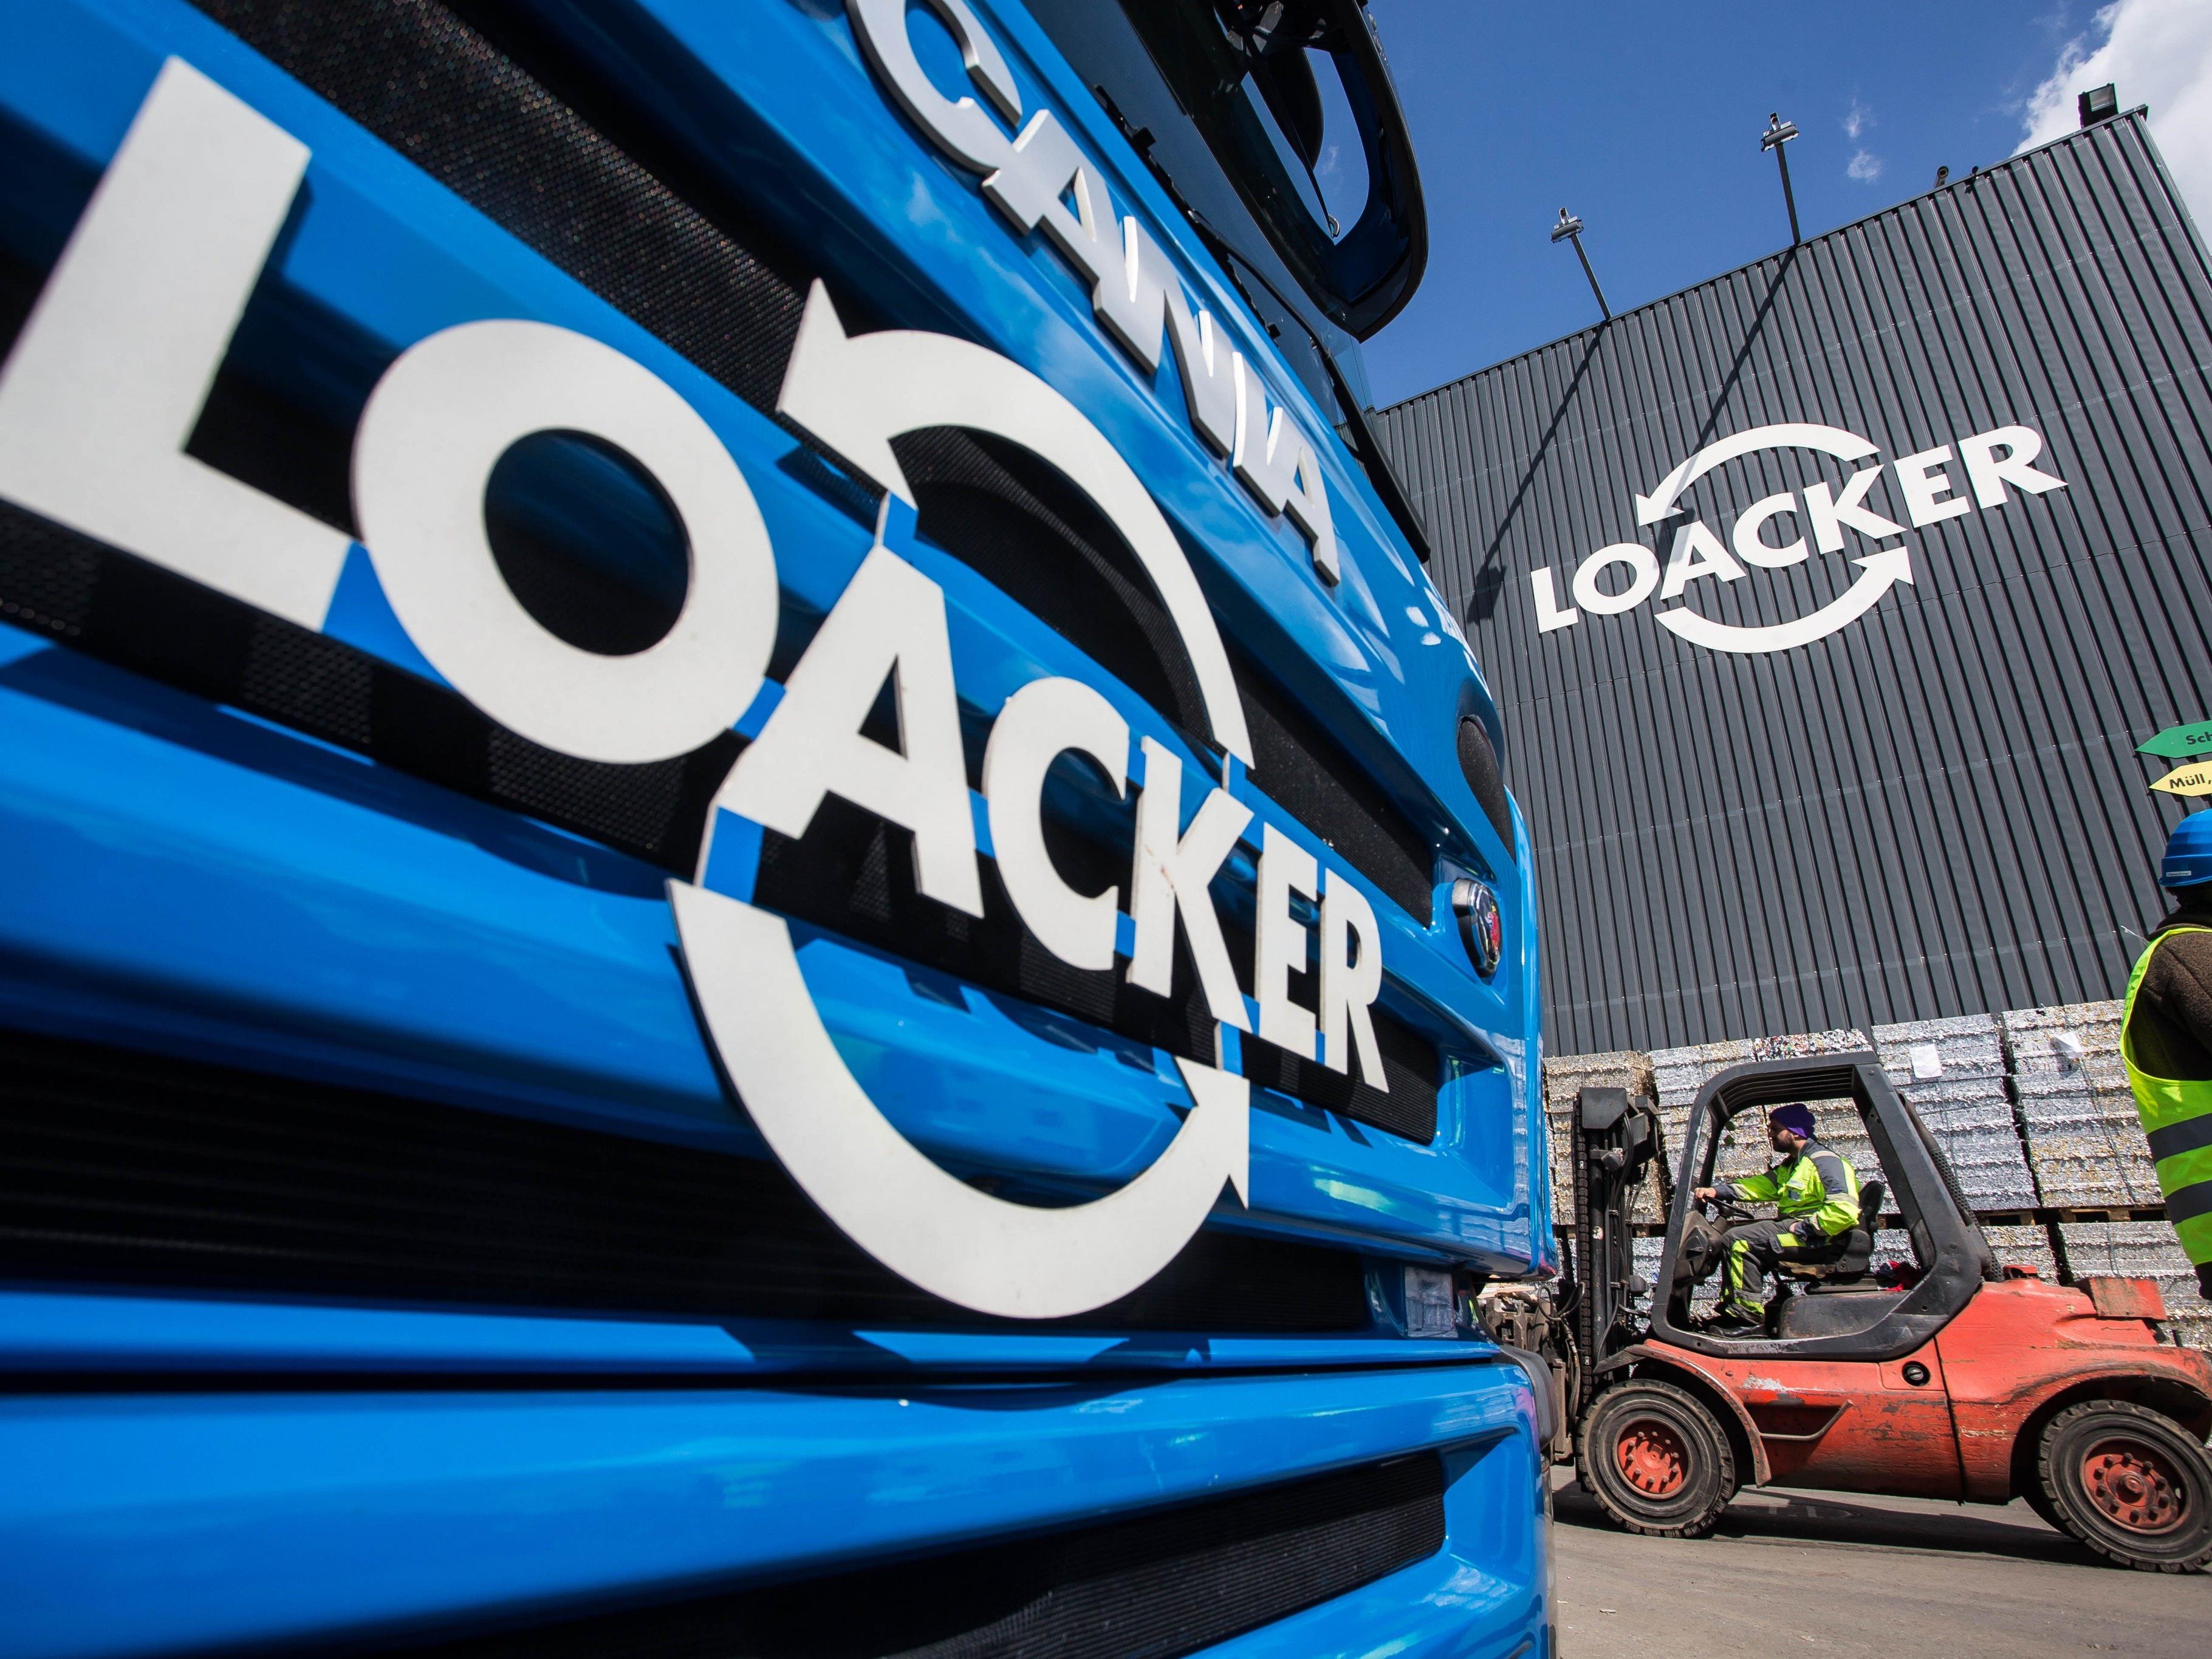 Das Götzner Recycling-Unternehmen Loacker legt seine Schweizer Betriebe zusammen.